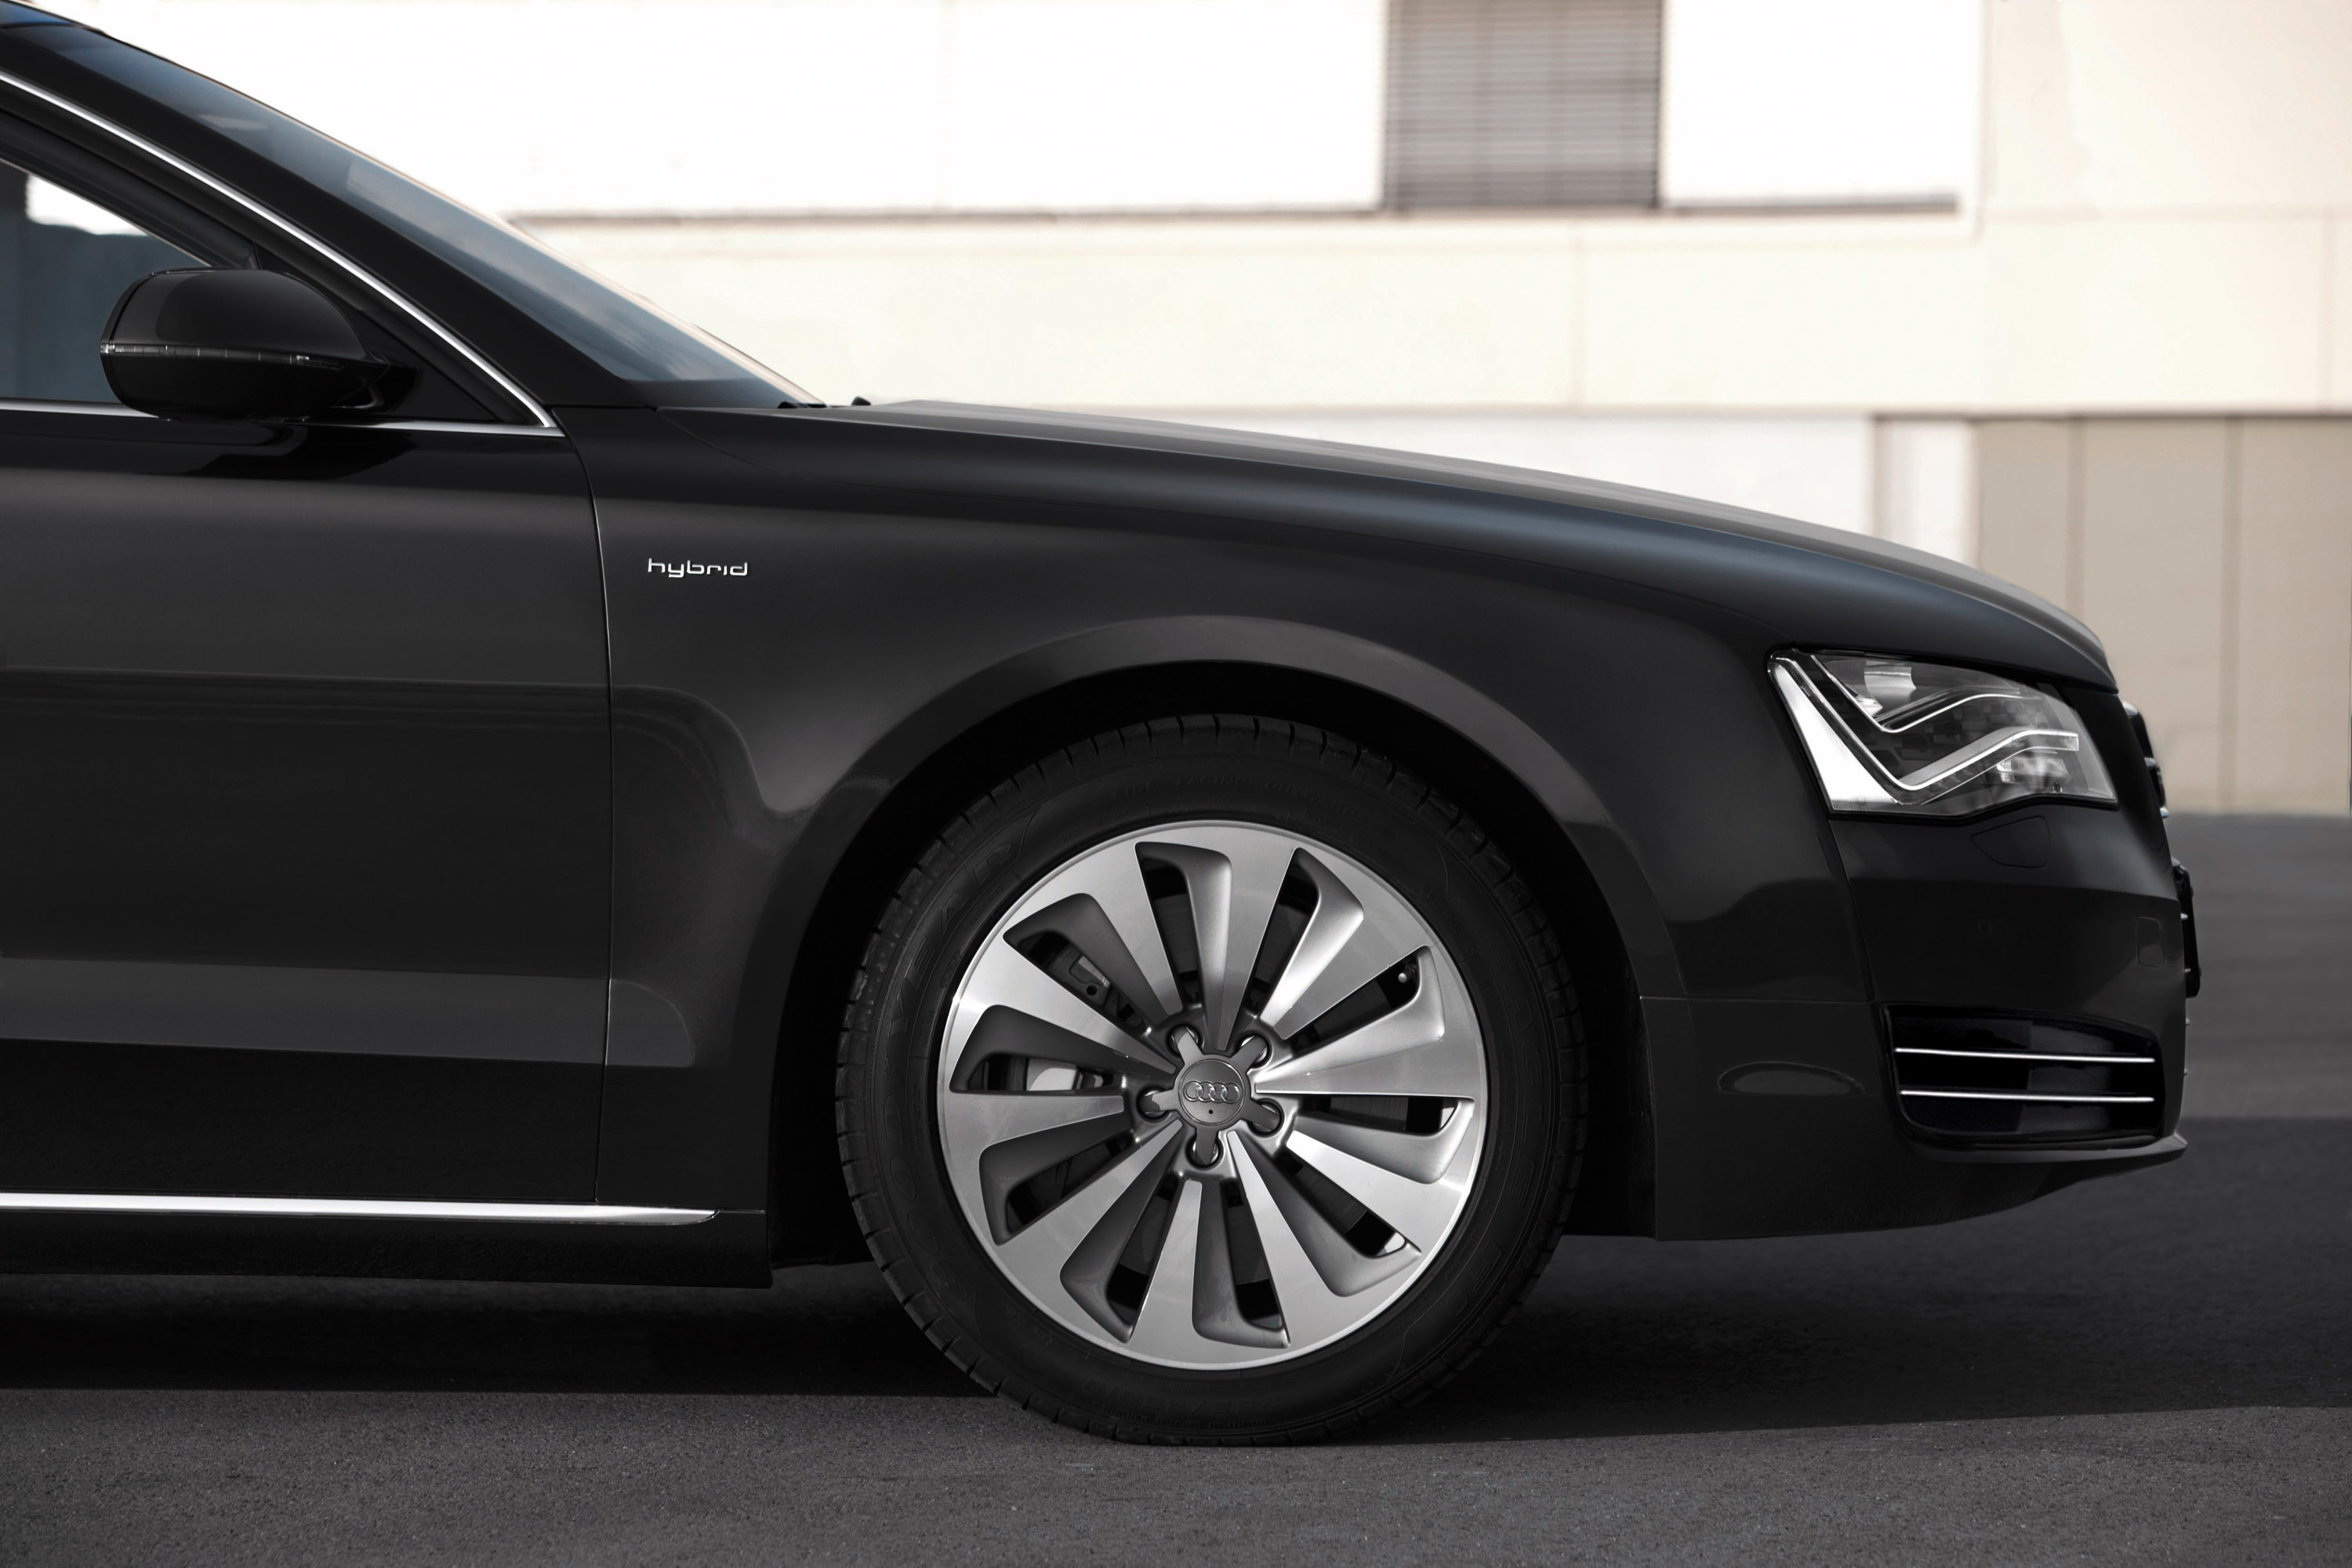 Audi A8 Hybrid - production version